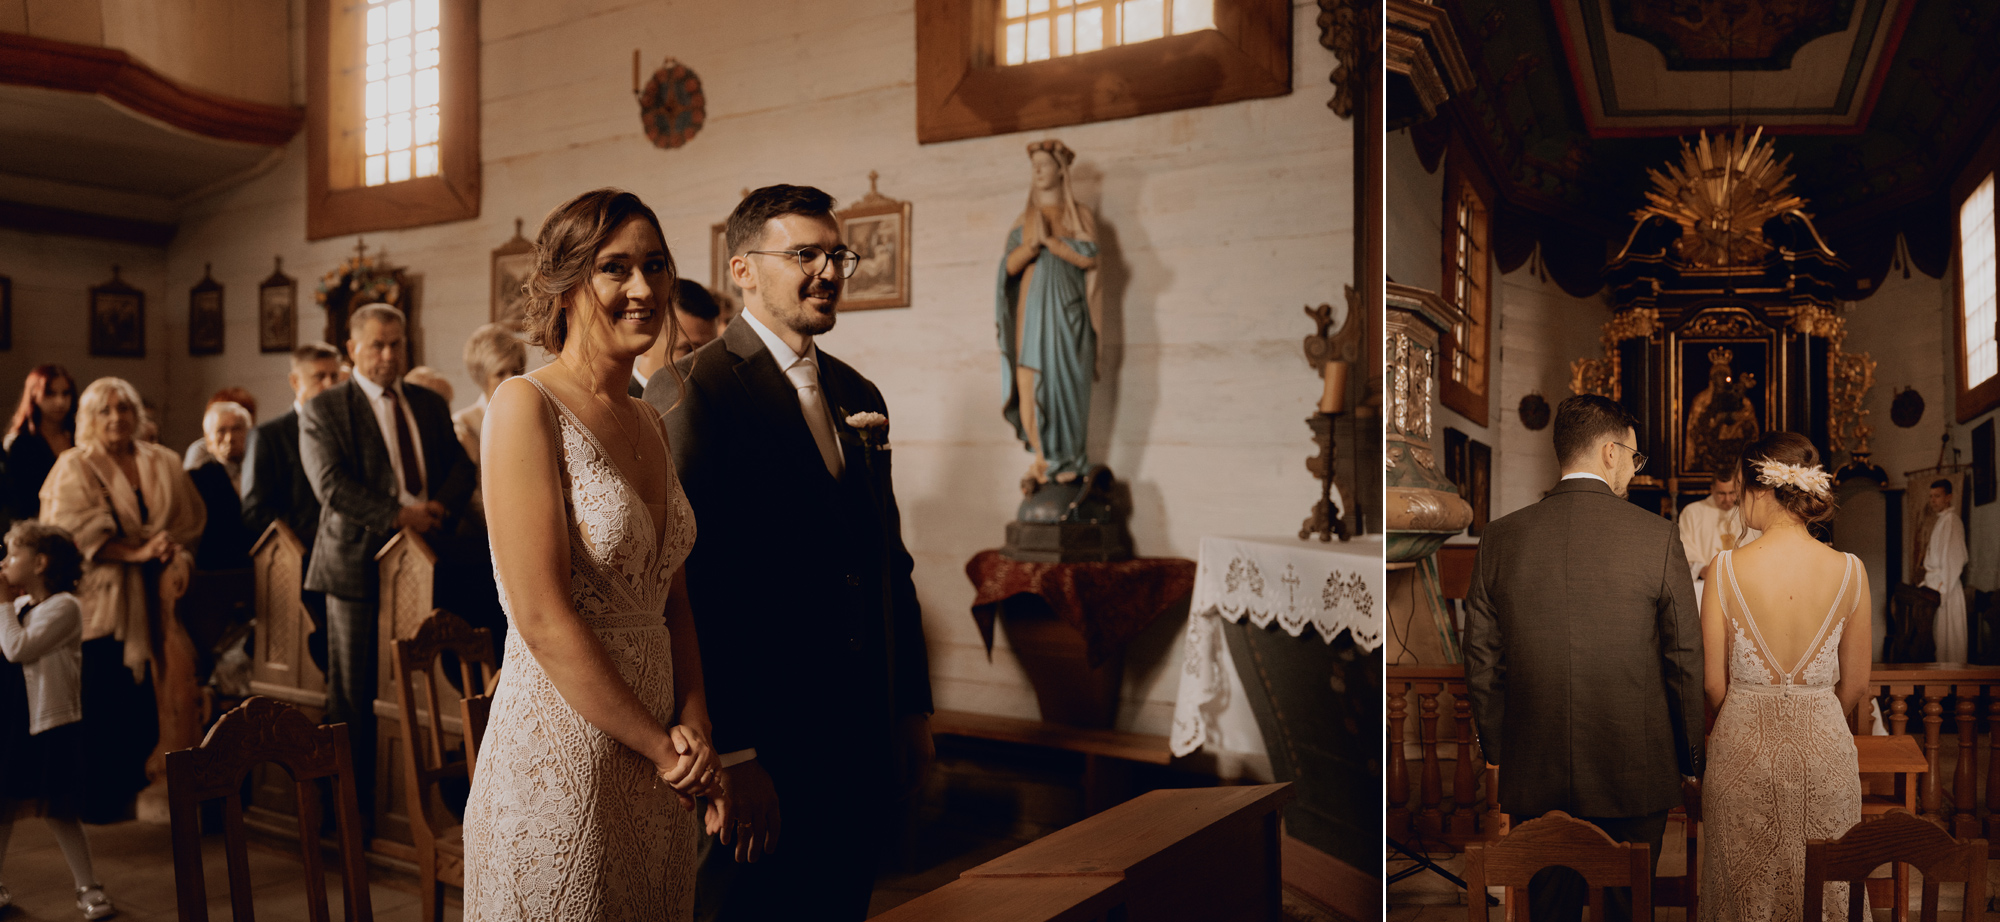 rustykalne wesele tokarnia kielce00060 - Rustykalne wesele w skansenie - Tokarnia